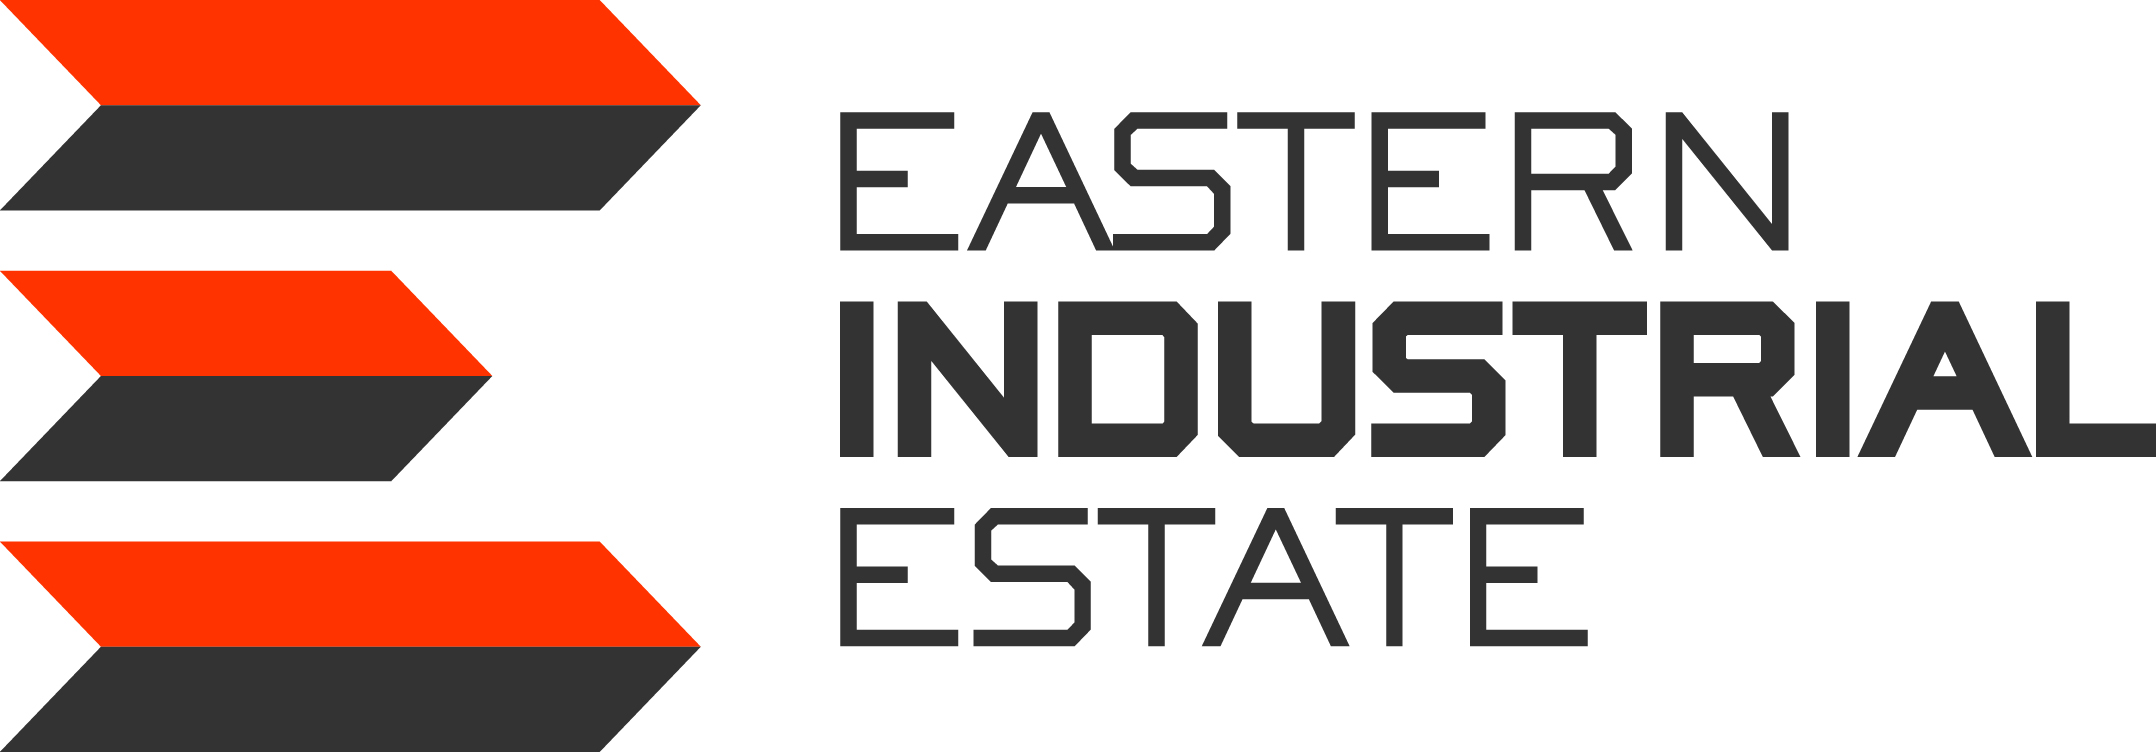 Eastern Industrial Estate